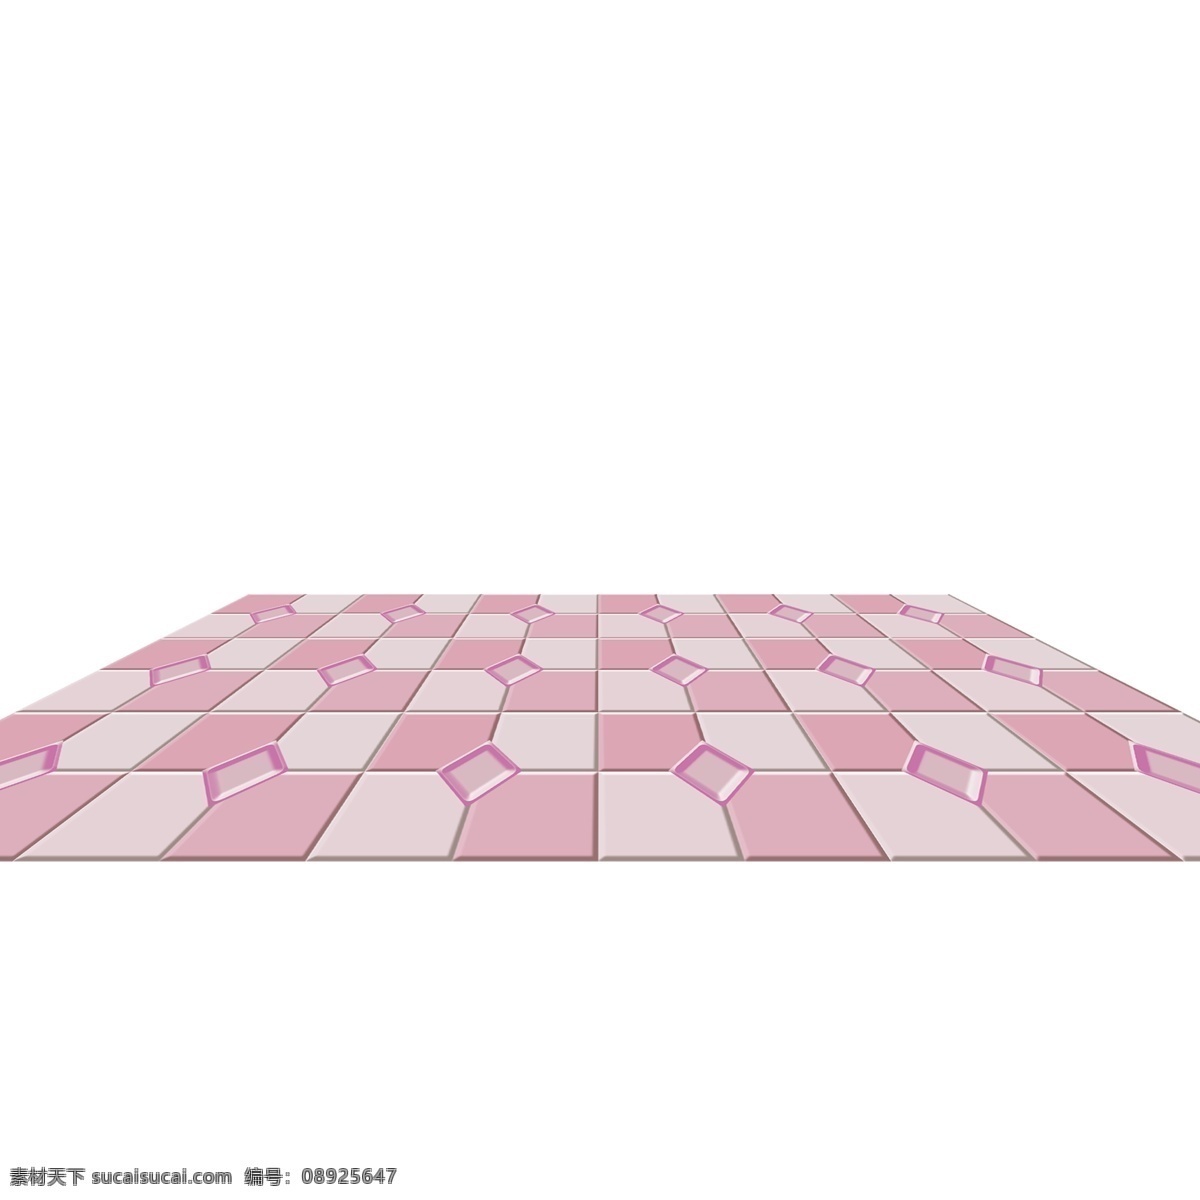 粉色 女生 浪漫 拼 色 瓷砖 地板 拼色 粉色女生 浪漫拼色 瓷砖地板